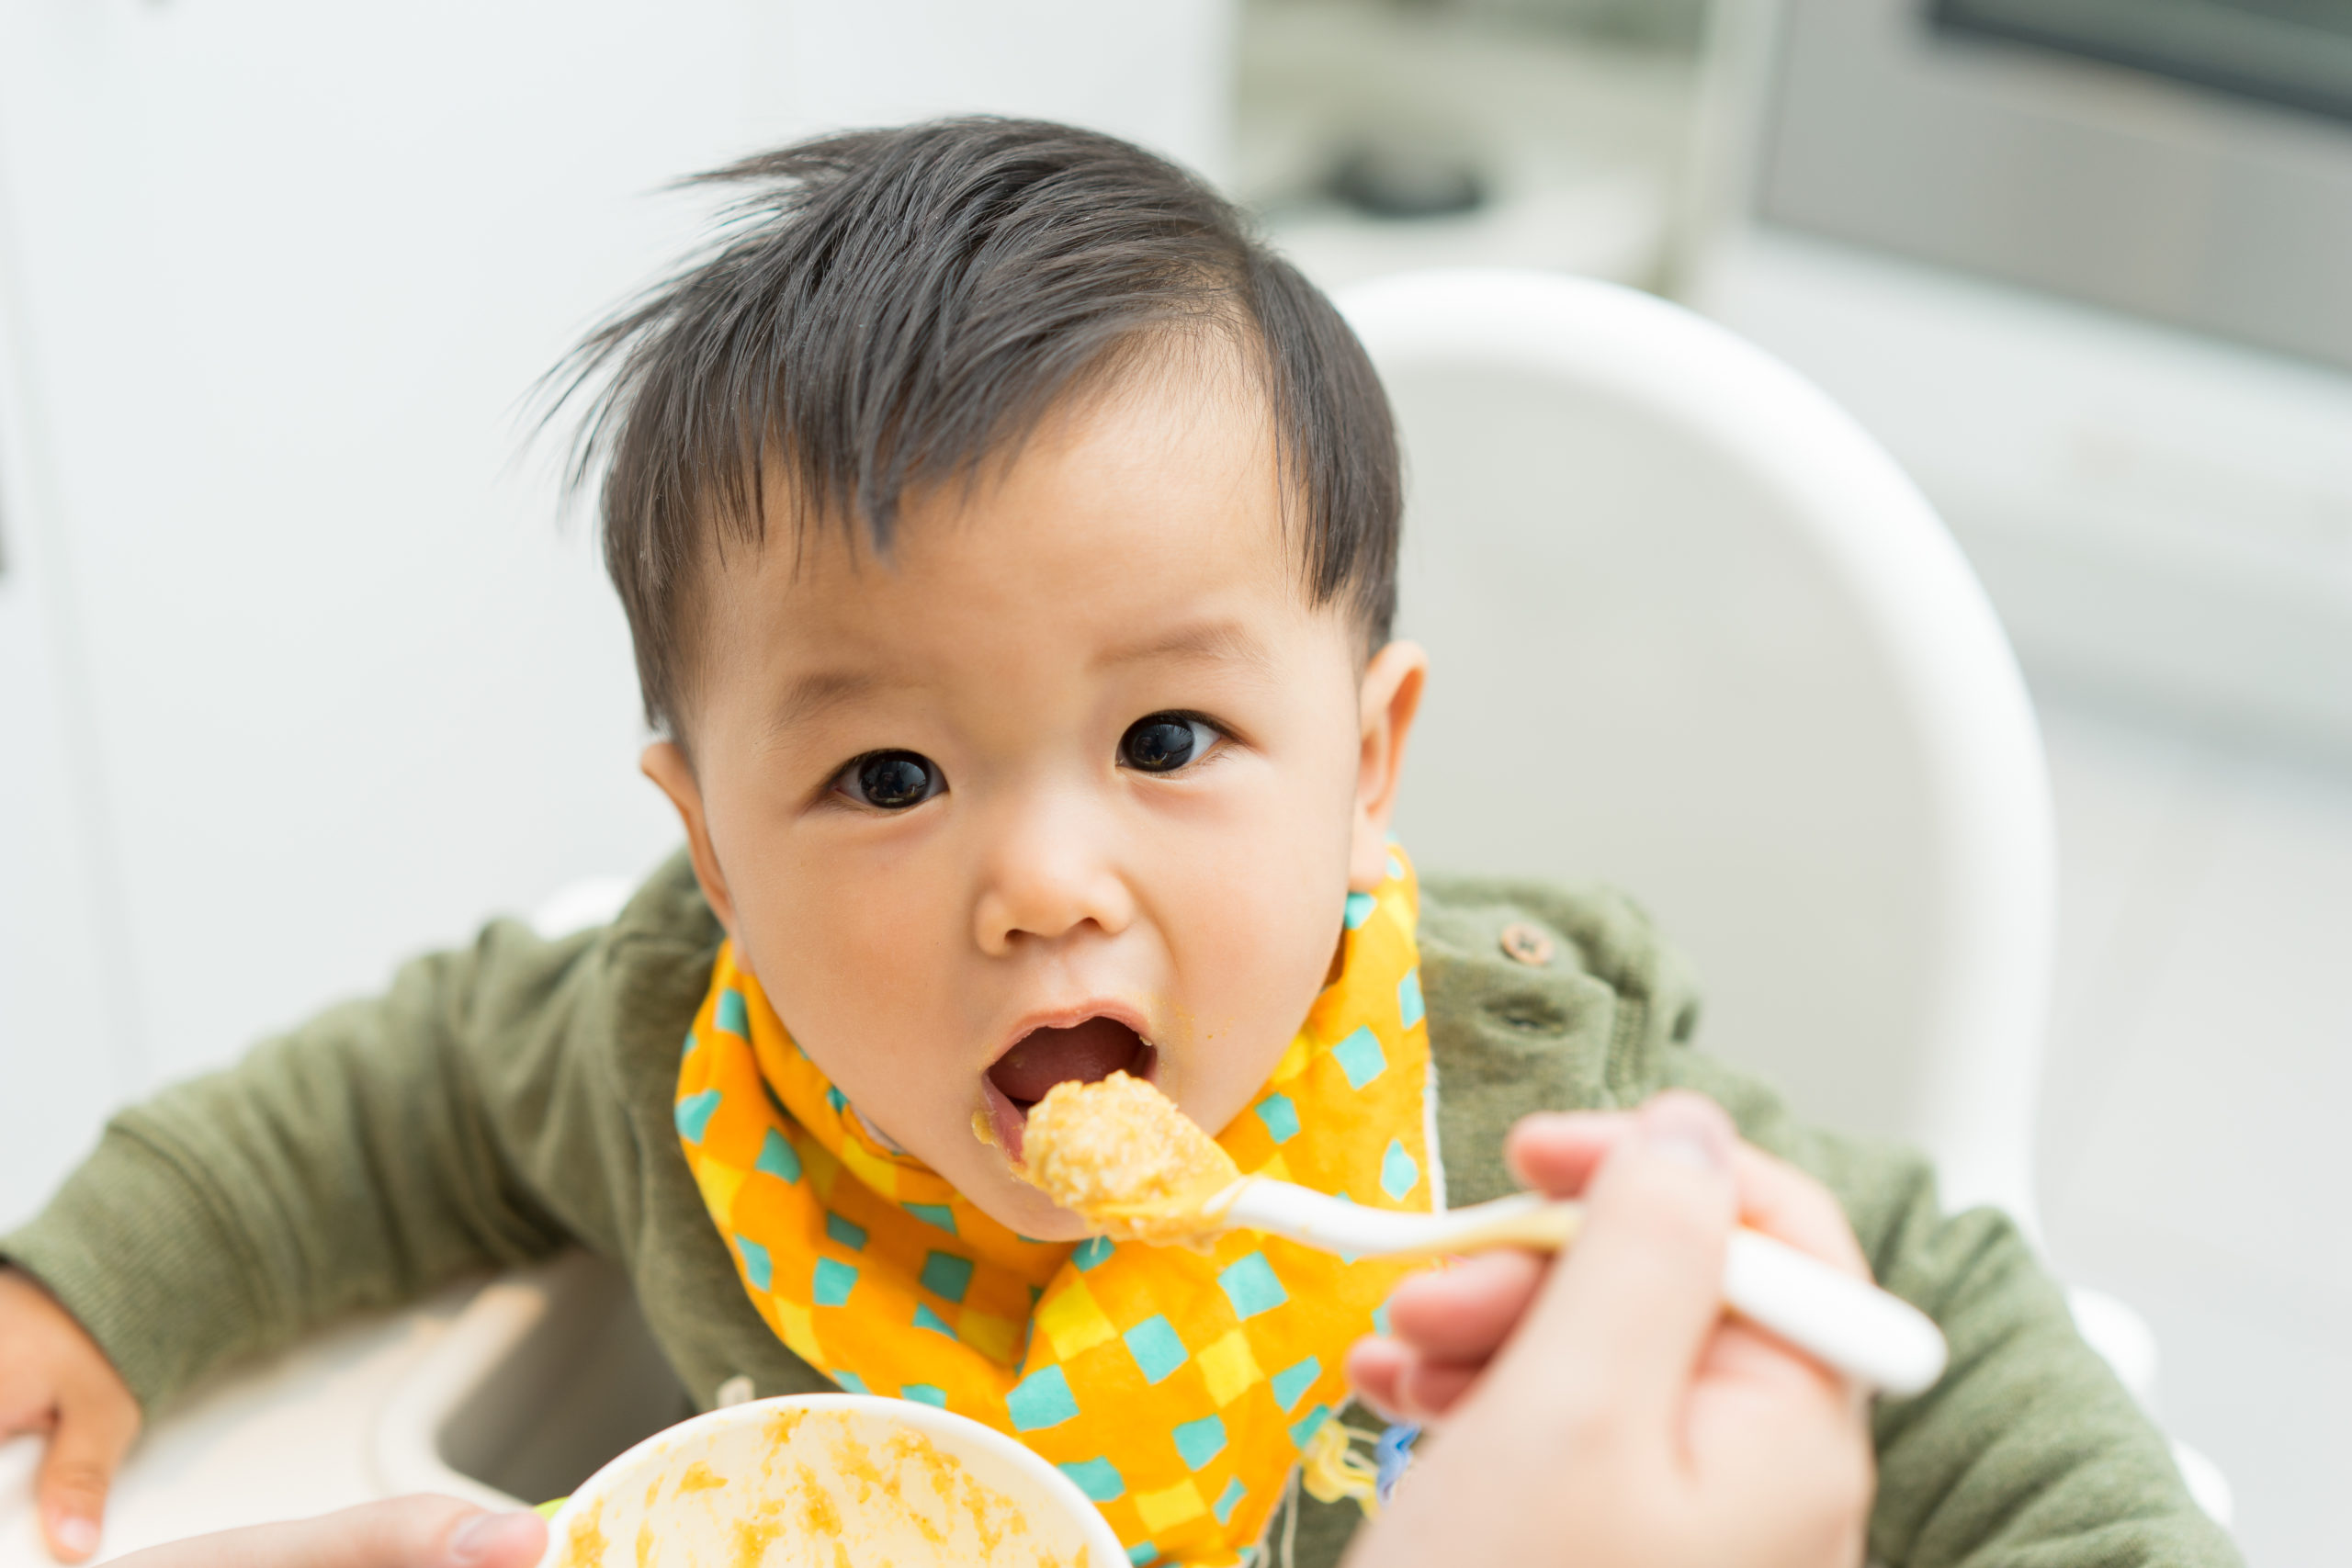 Diversification alimentaire : quels aliments donner à bébé ?